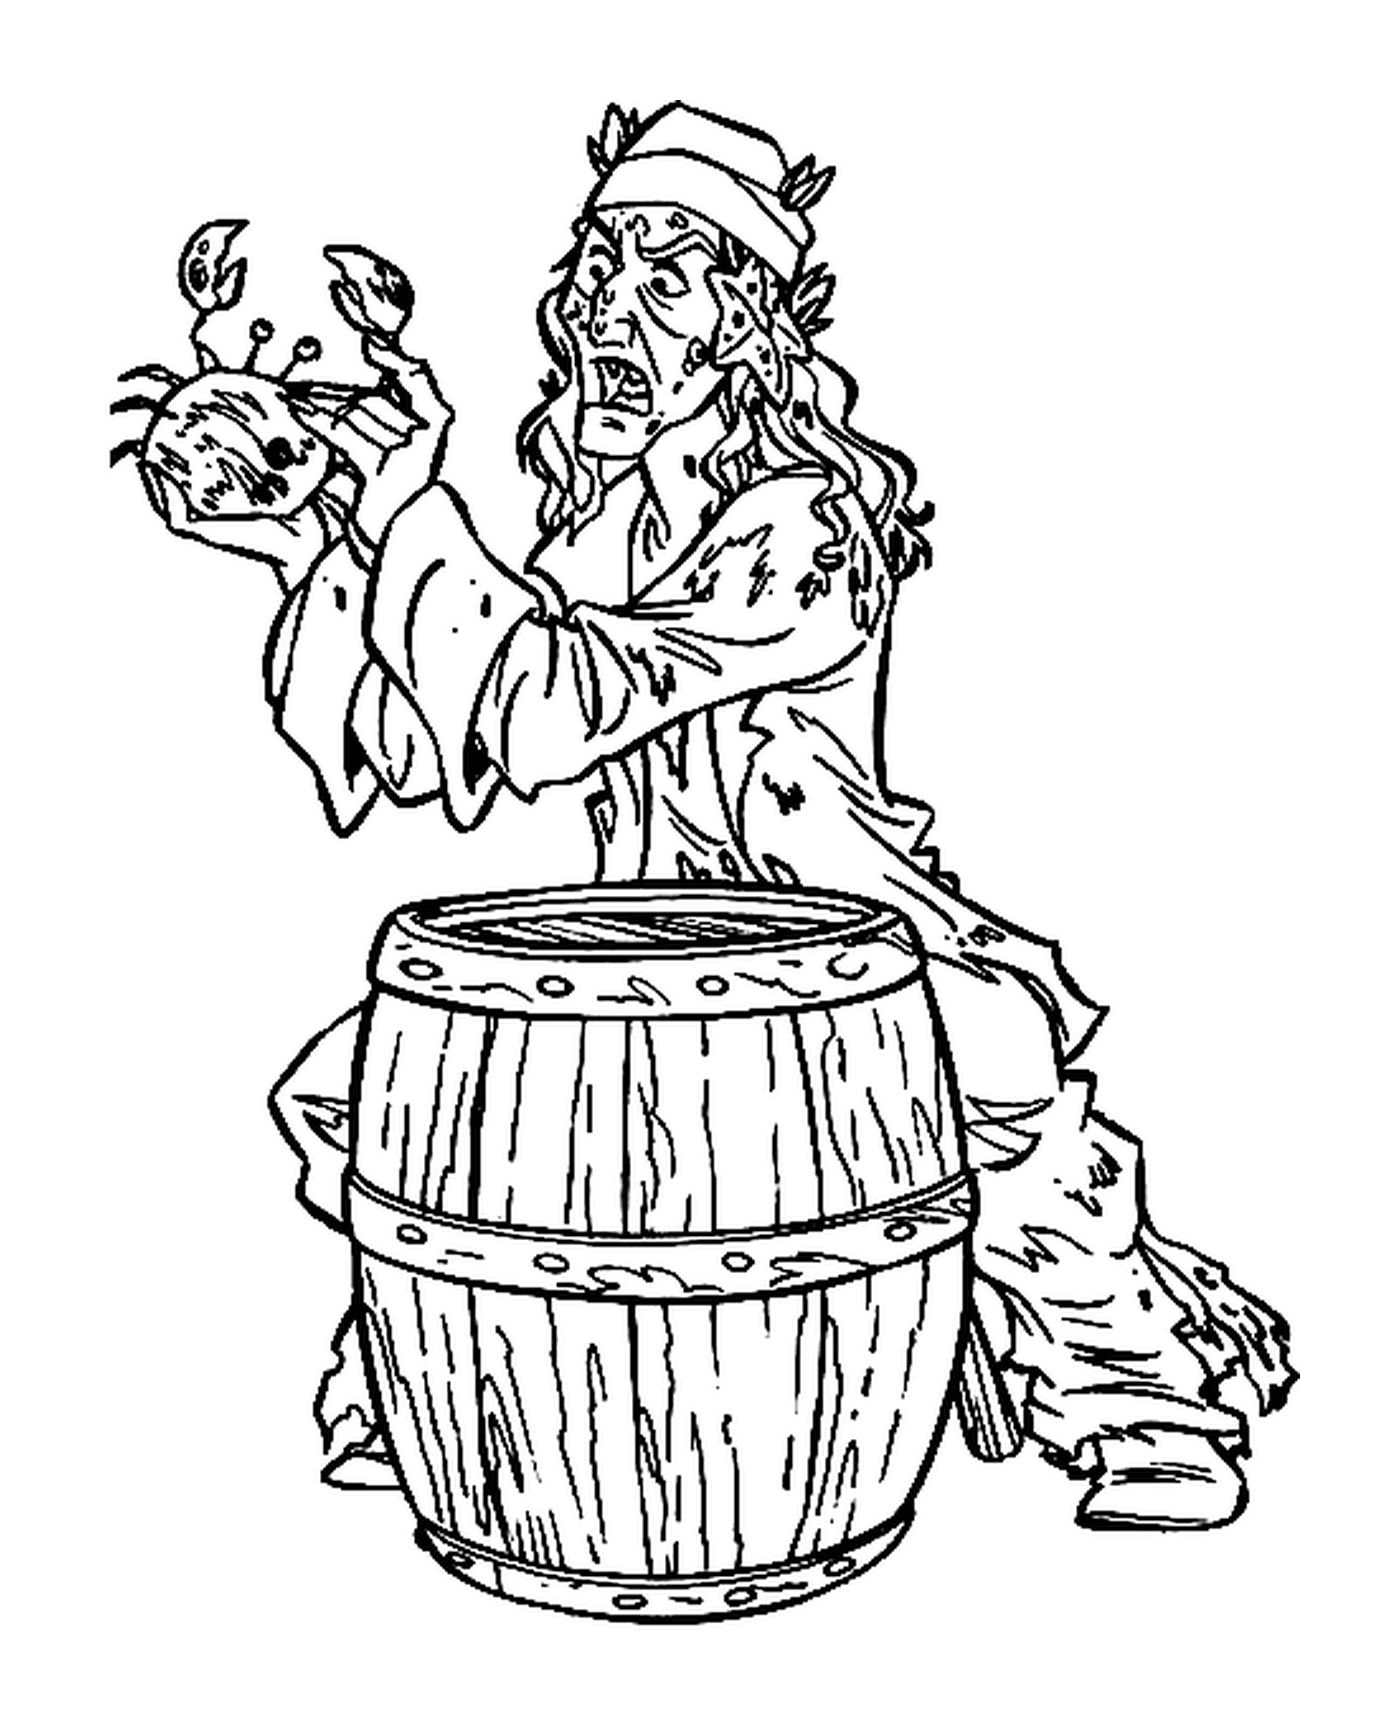  Um pirata amaldiçoado segurando um caranguejo atrás de um barril 